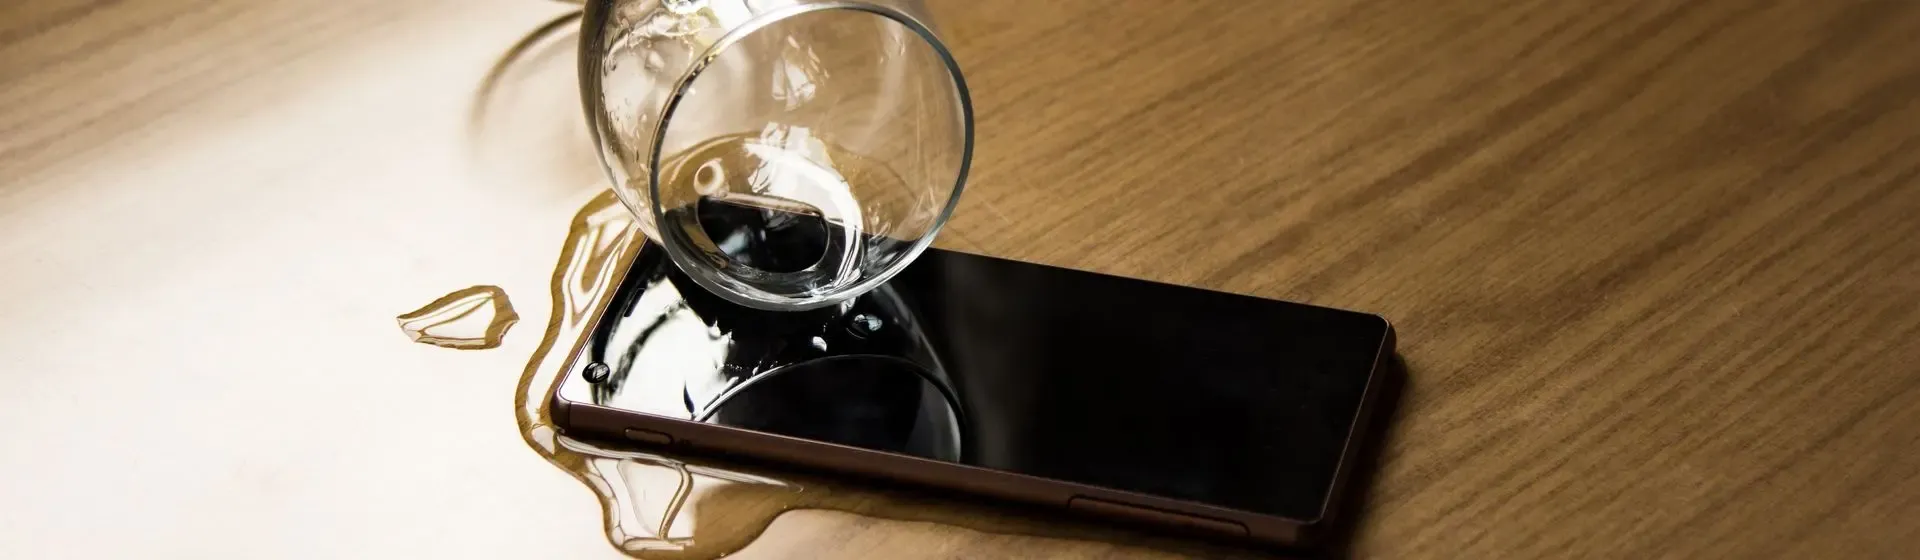 Surface Phone e Edge para celulares revelados por teste de